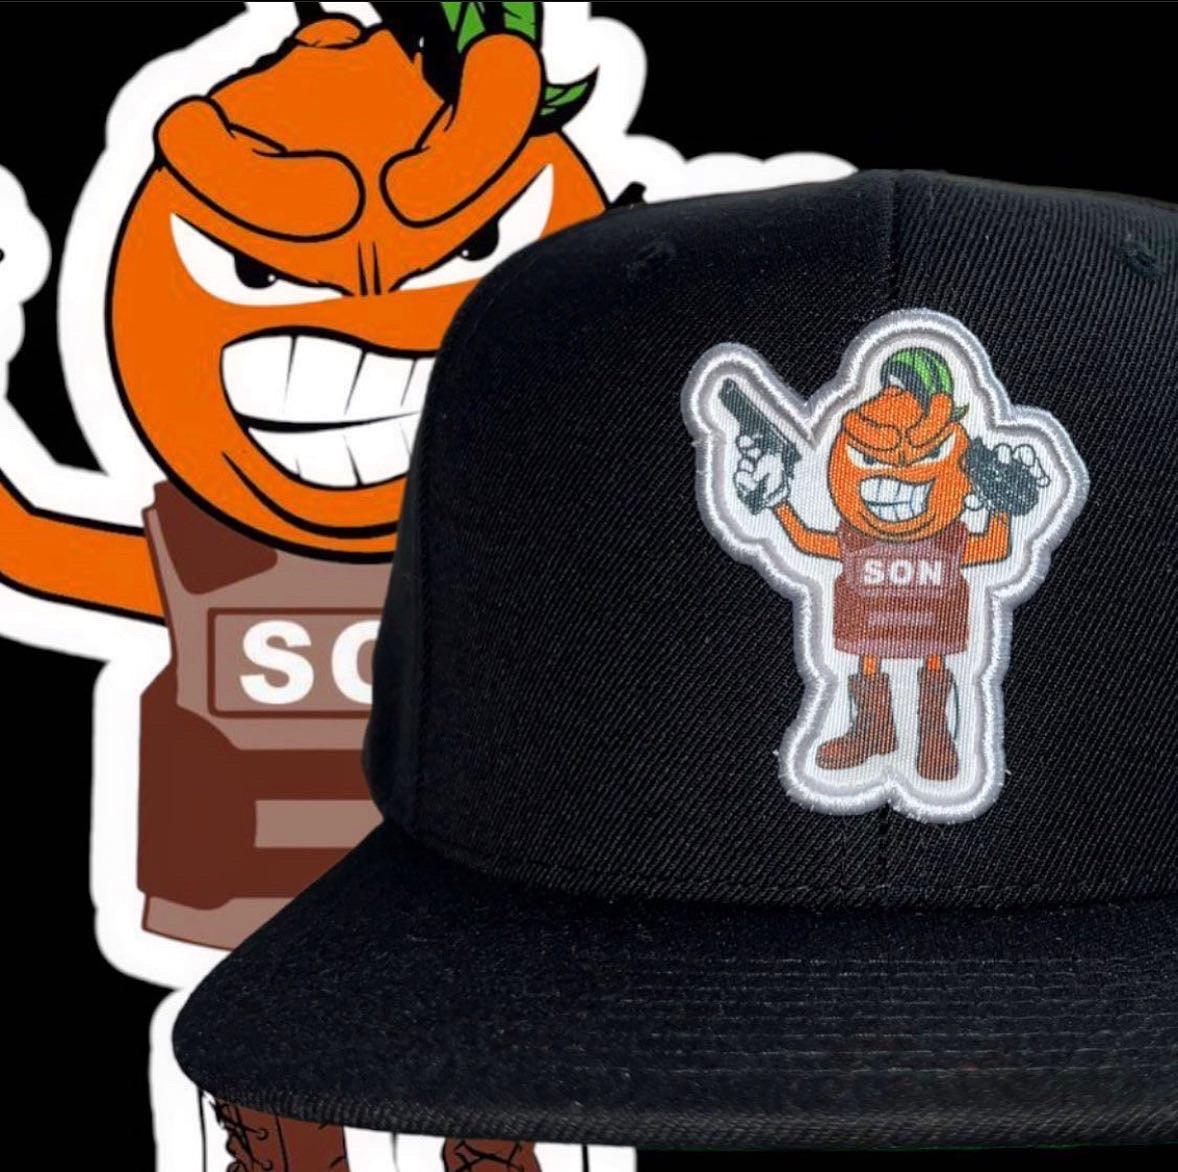 Sonora Hat 🧢 - BeisbolMXShop